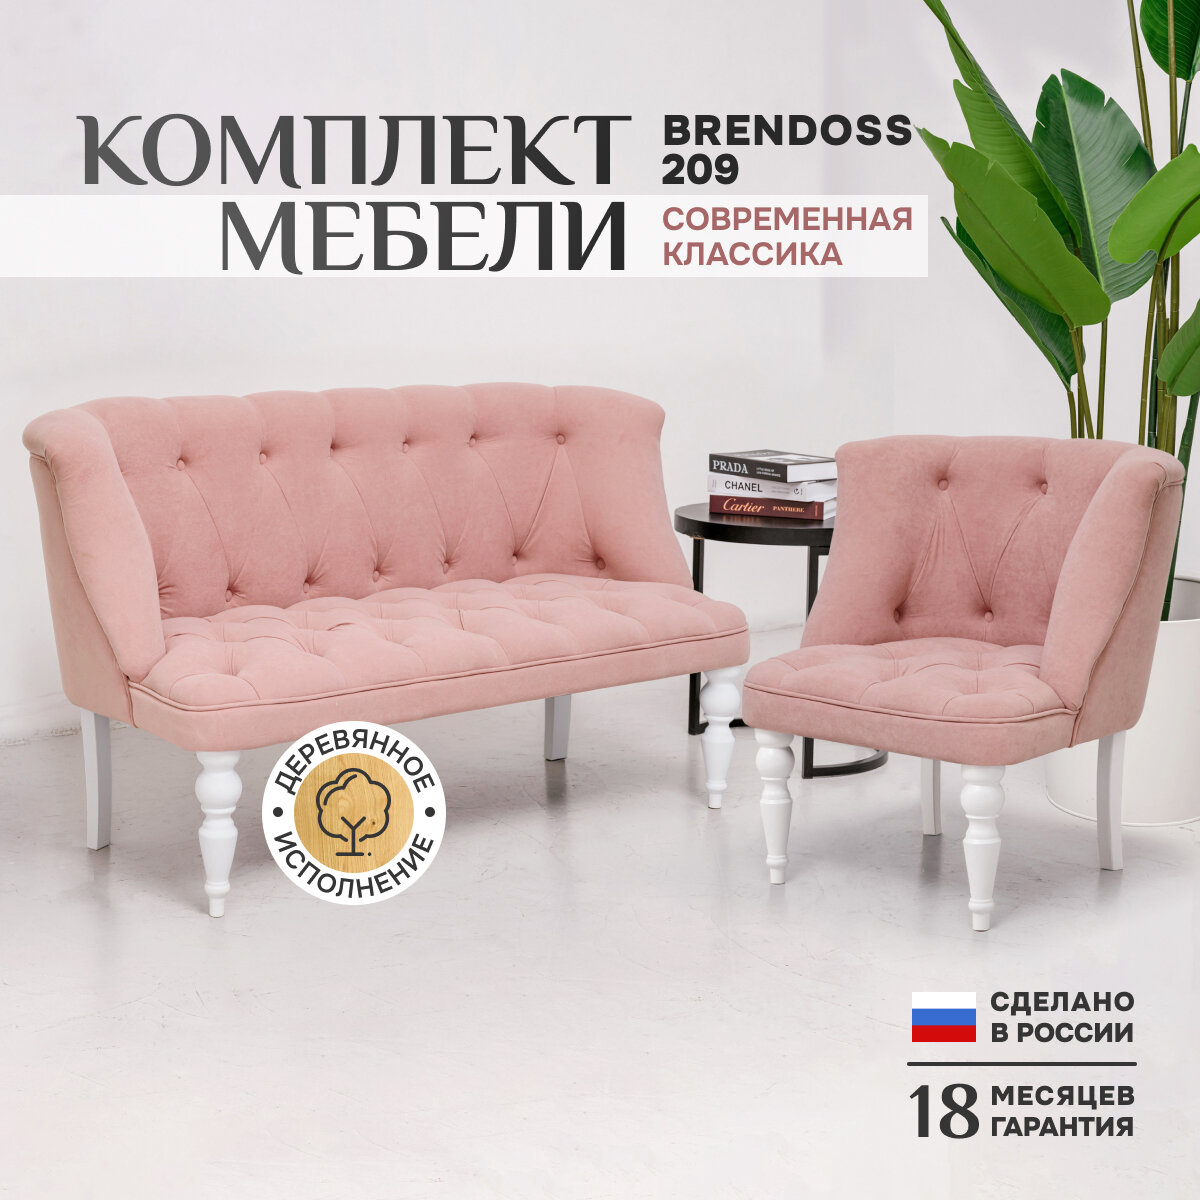 Комплект 209, прямой диван и кресло, каретная стяжка, материал износостойкий велюр, белые ножки, цвет розовый